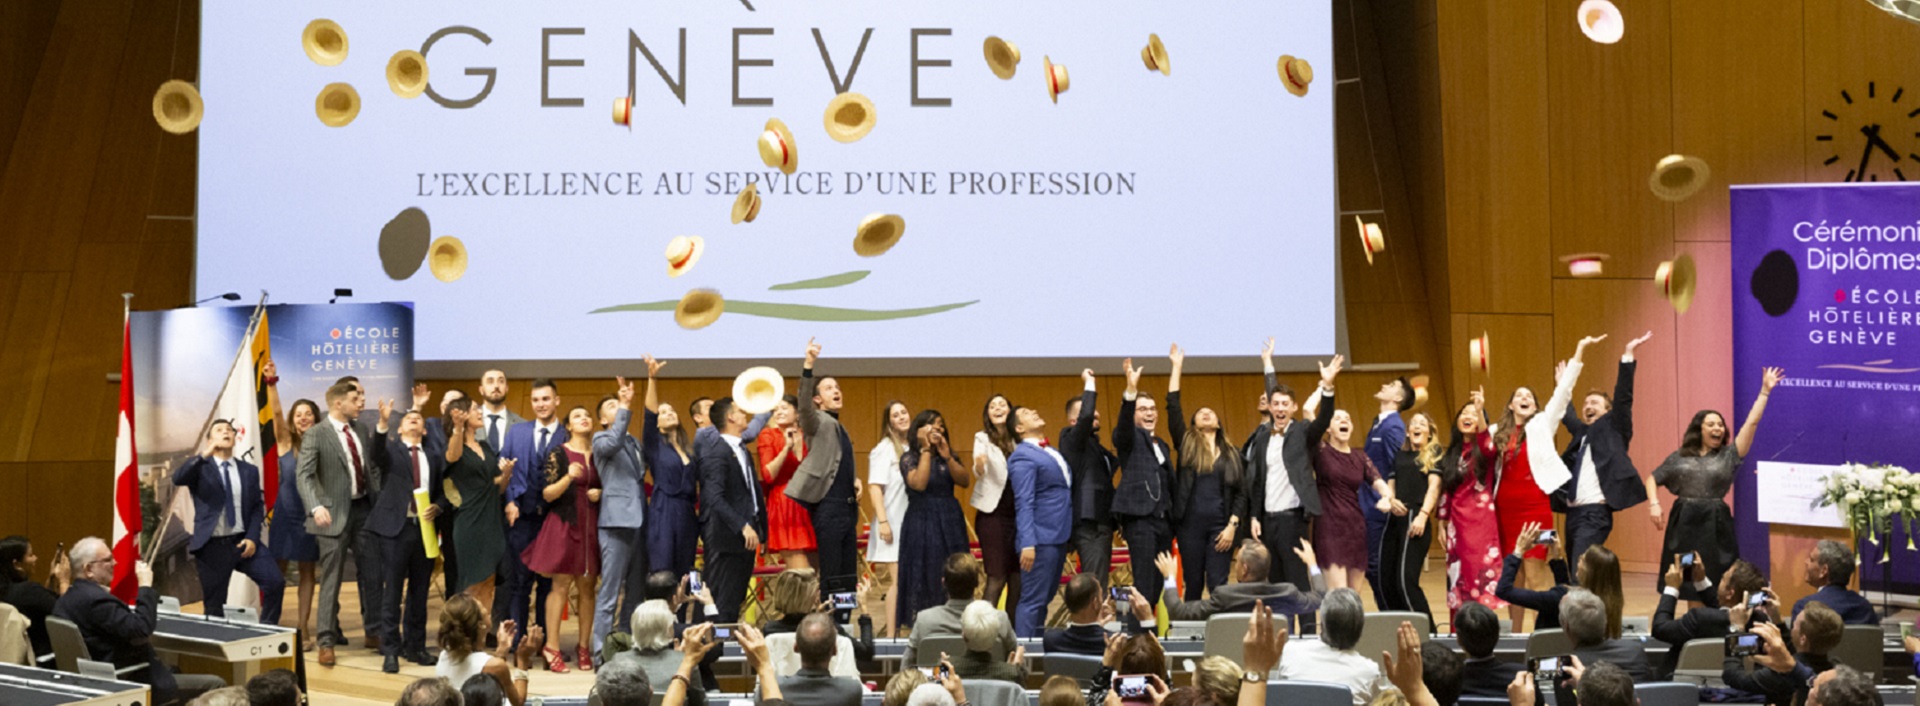 Cérémonie de remise des diplomes Promotion CHI Geneve Ecole Hôtelière de Genève.